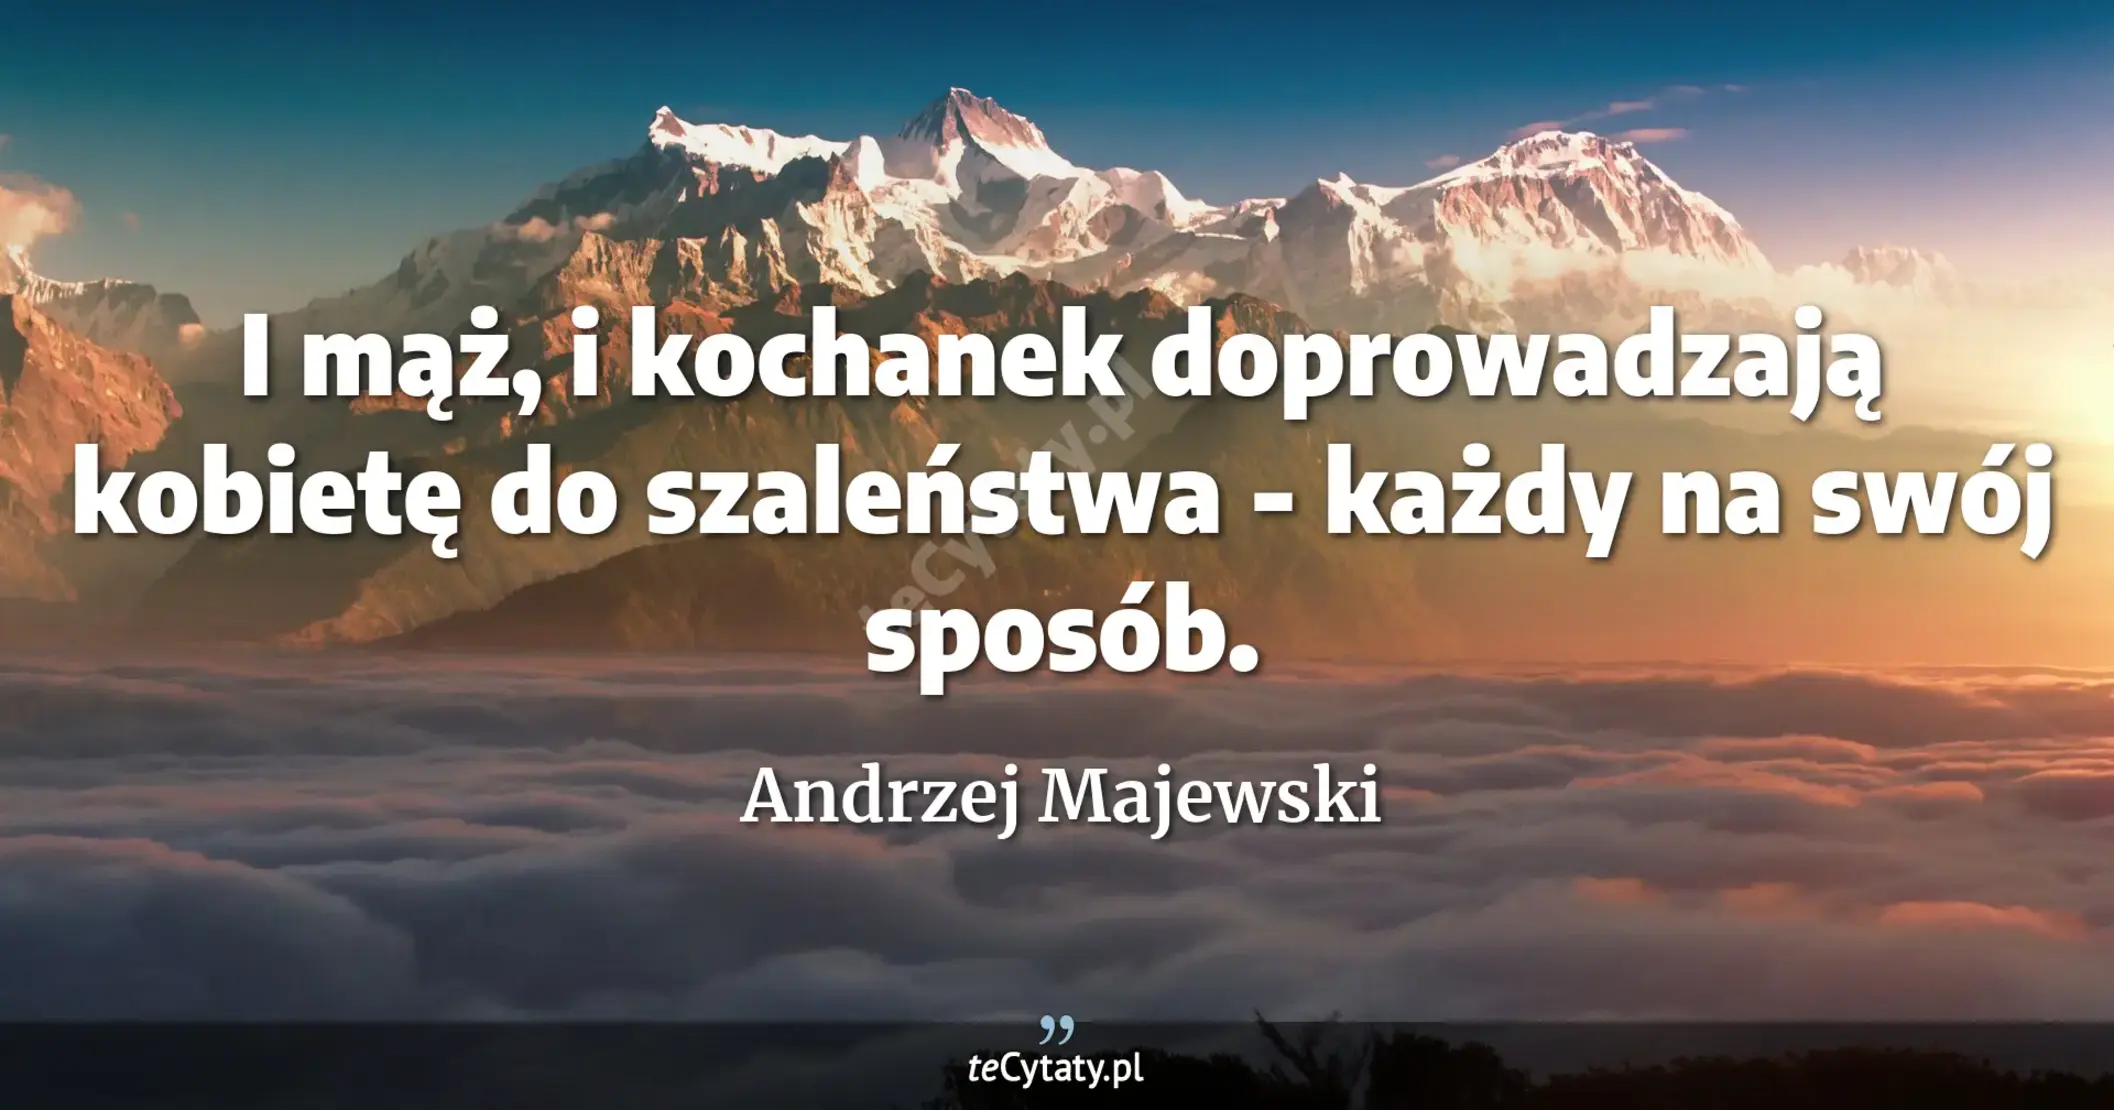 I mąż, i kochanek doprowadzają kobietę do szaleństwa - każdy na swój sposób. - Andrzej Majewski